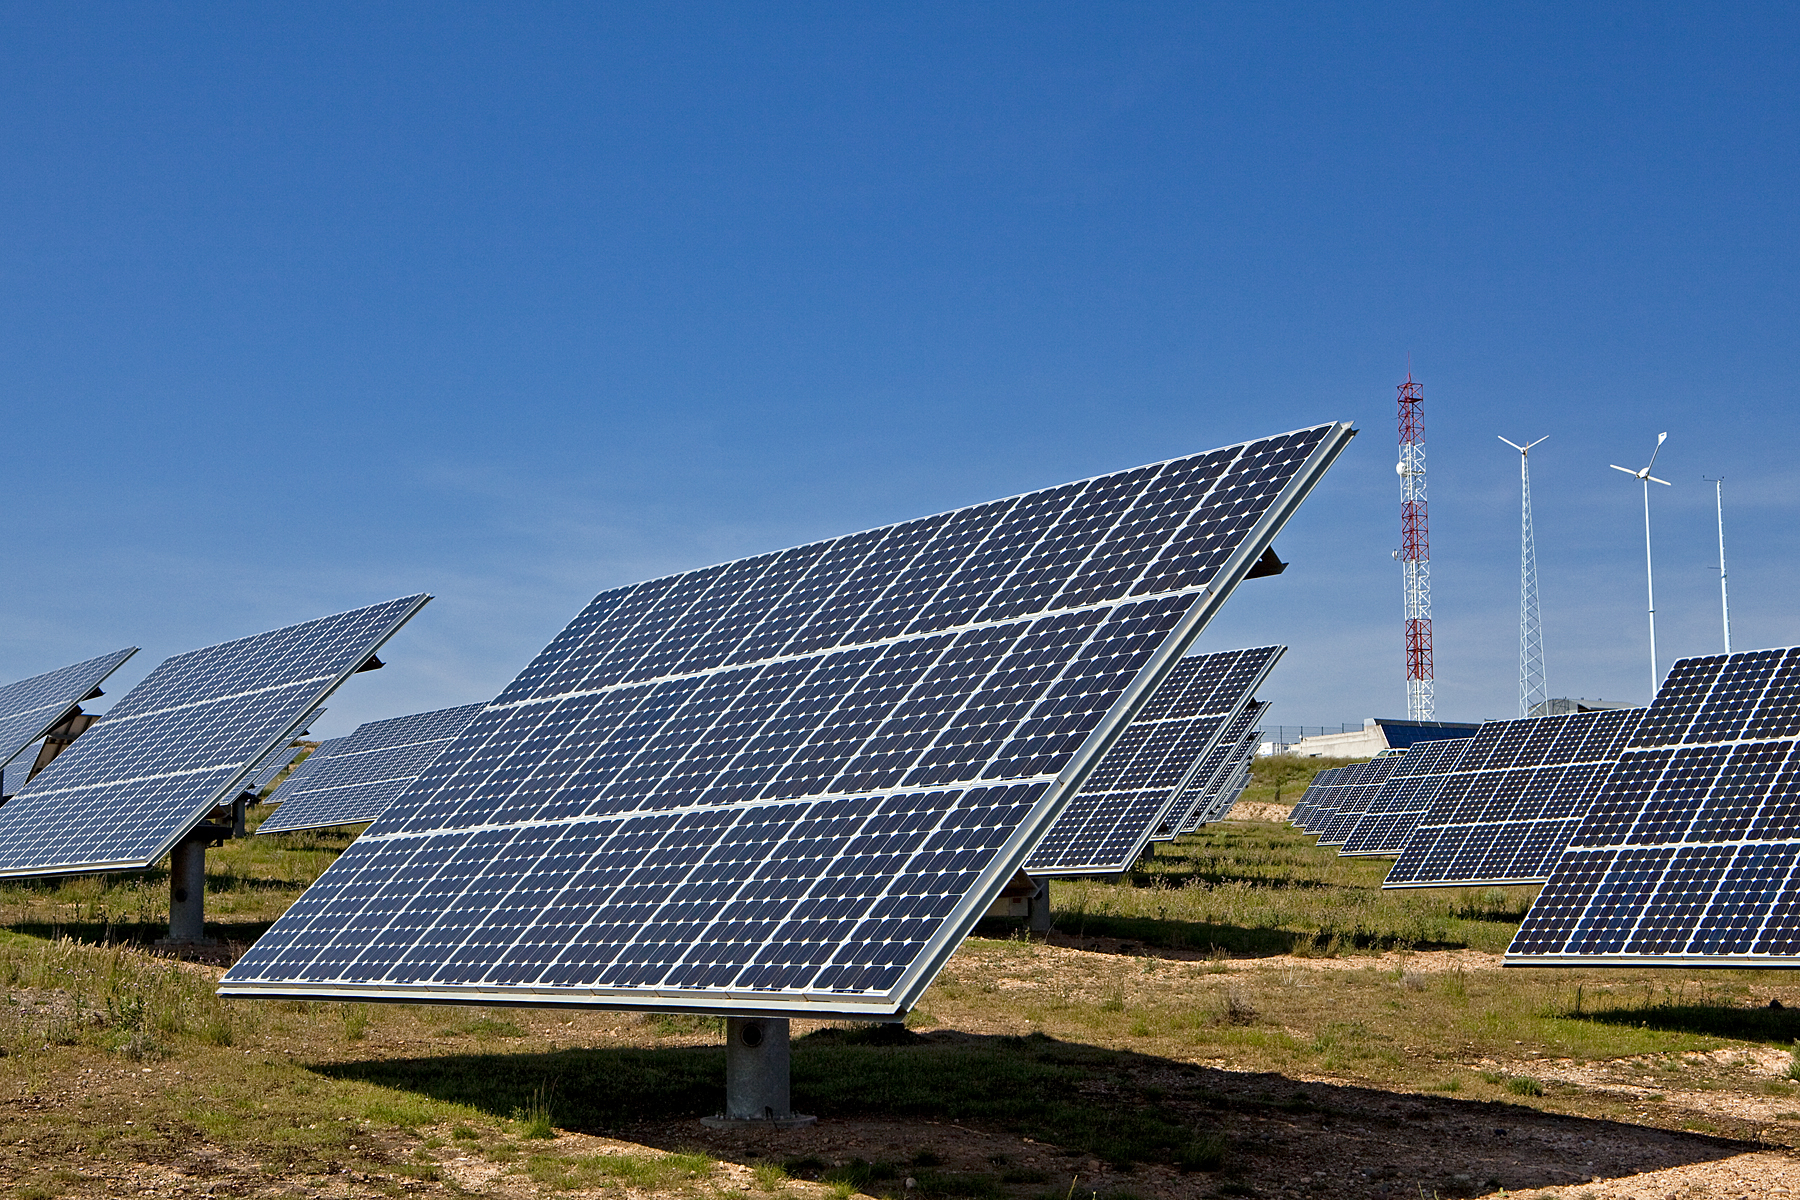 Generadoras: 99% de proyectos en calificación ambiental son energías renovables